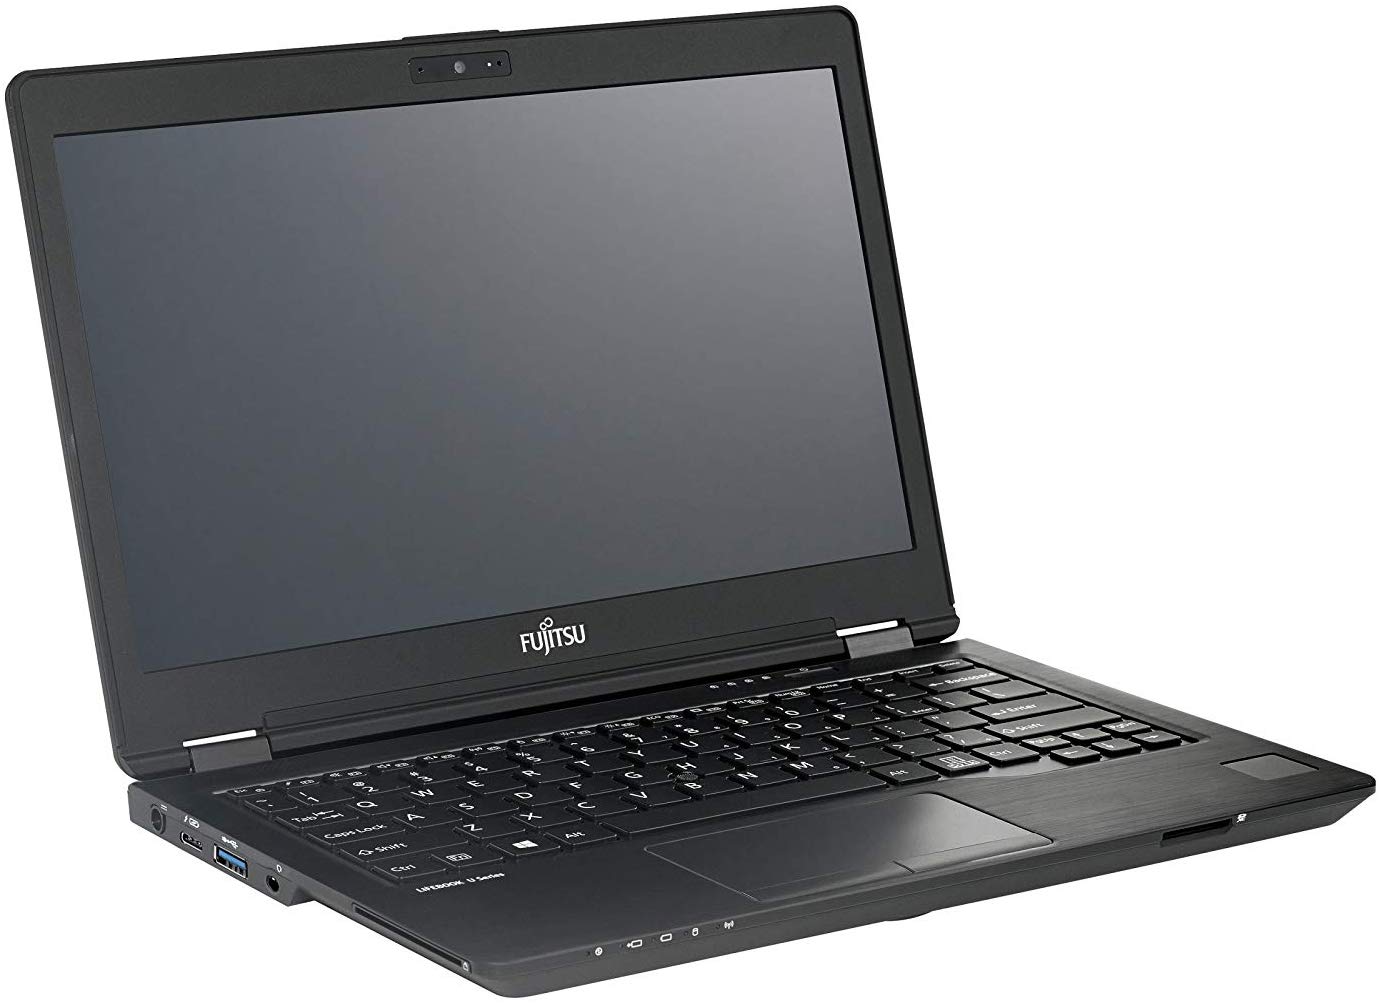 Fujitsu LifeBook U729 i3-8145U 8GB 256GB 12,5" WIN10 Pro LTE  Laptop hervorragend